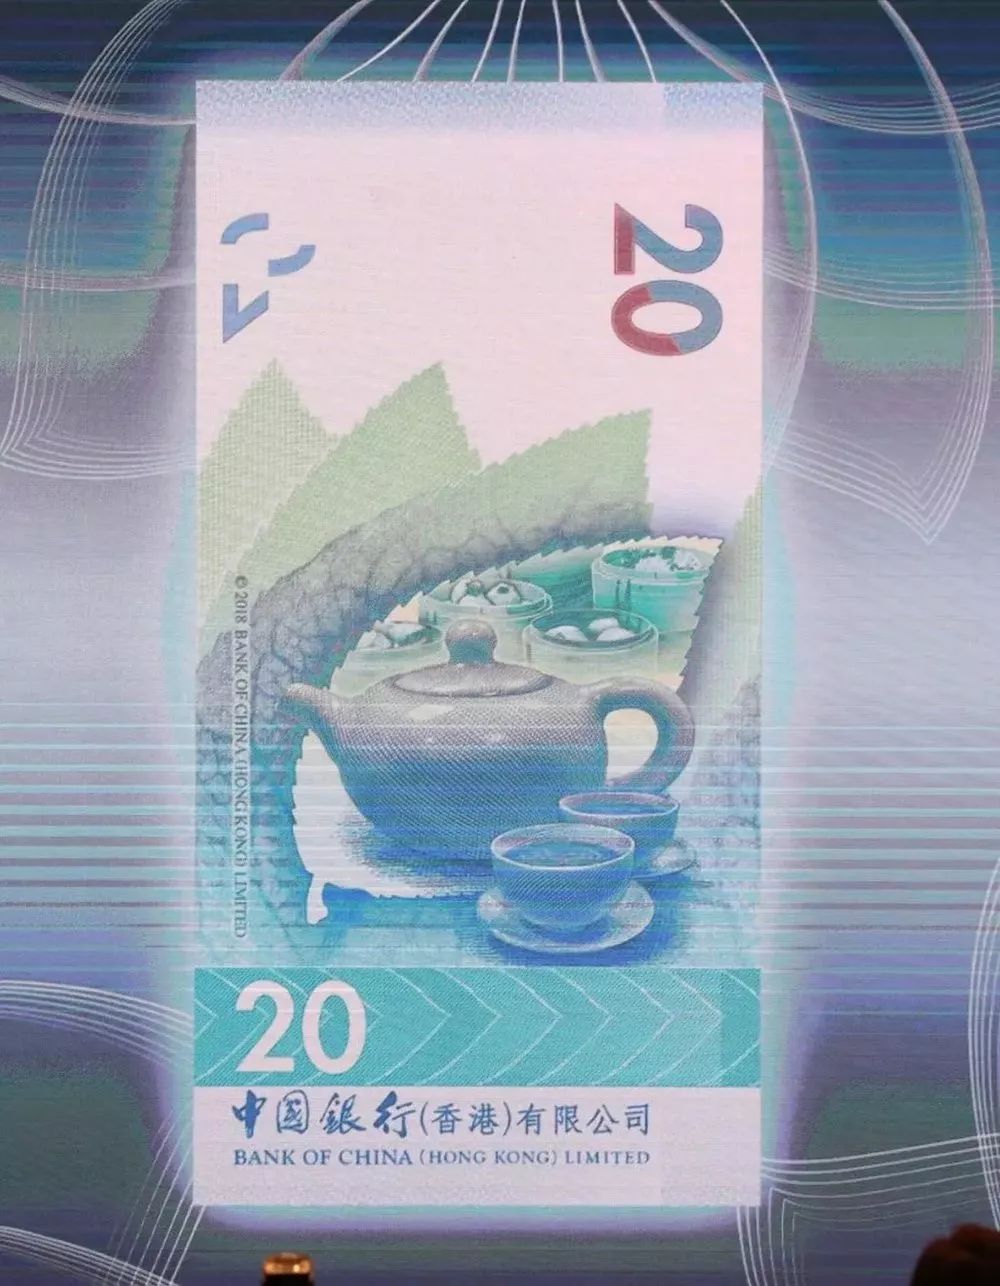 新版港币年底发行 增7大防伪特征